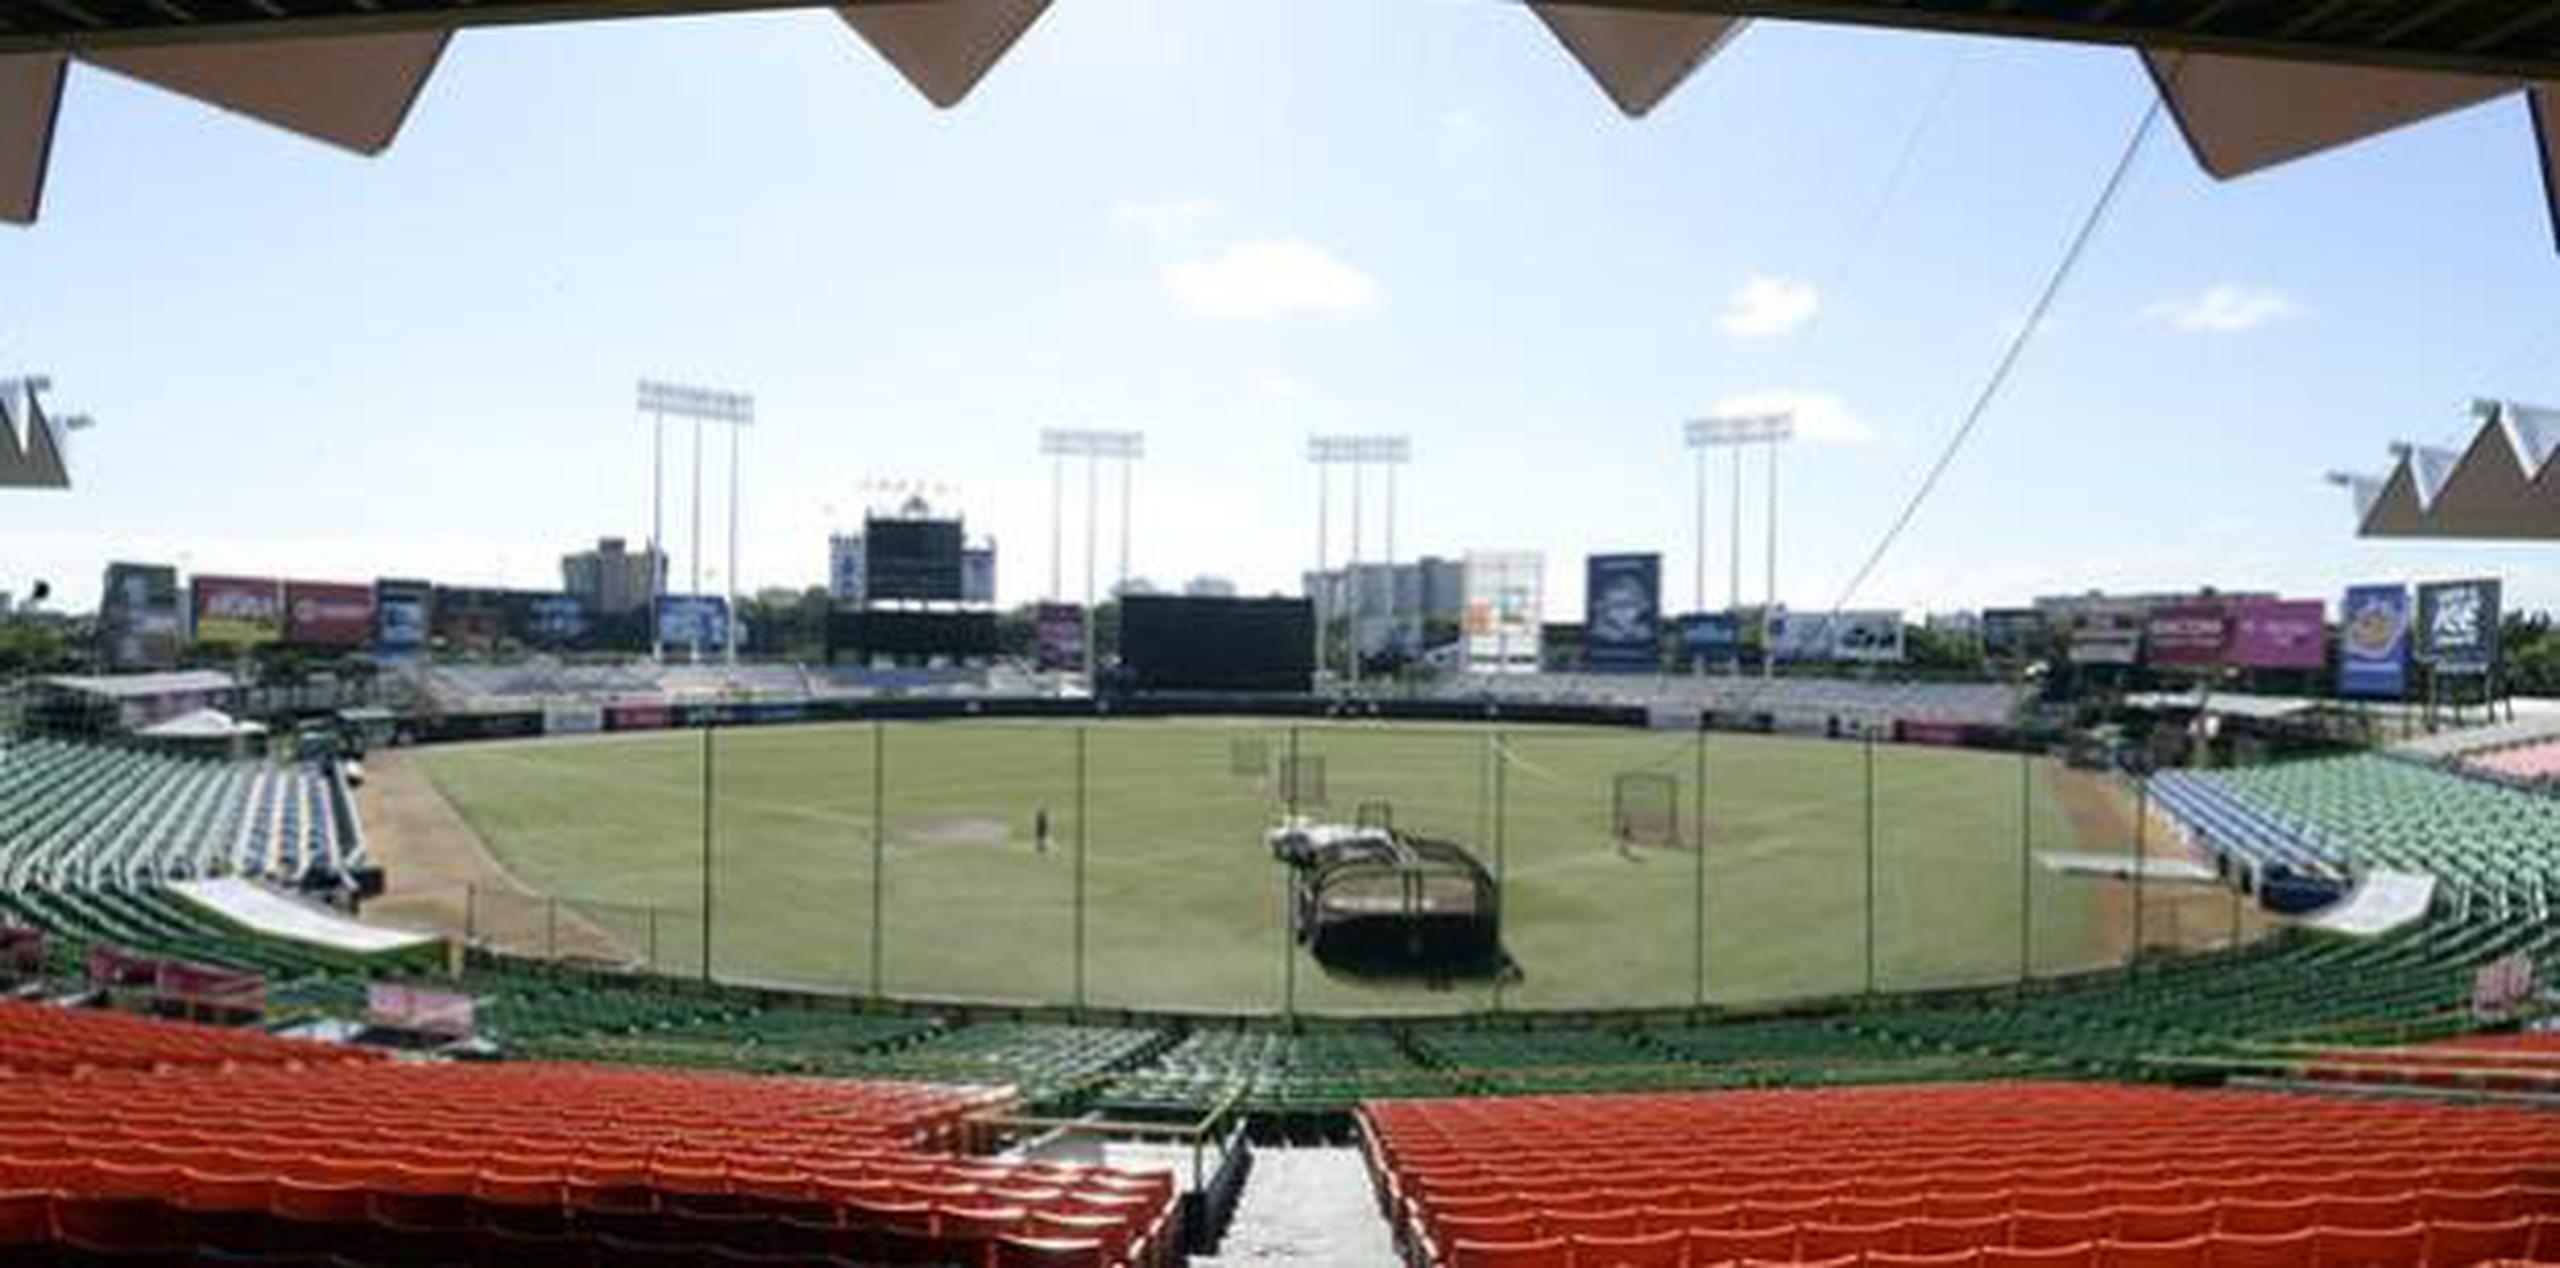 El juego entre Santurce y Juana Díaz estaba programado para celebrarse en el estadio Hiram Bithorn. (Archivo)